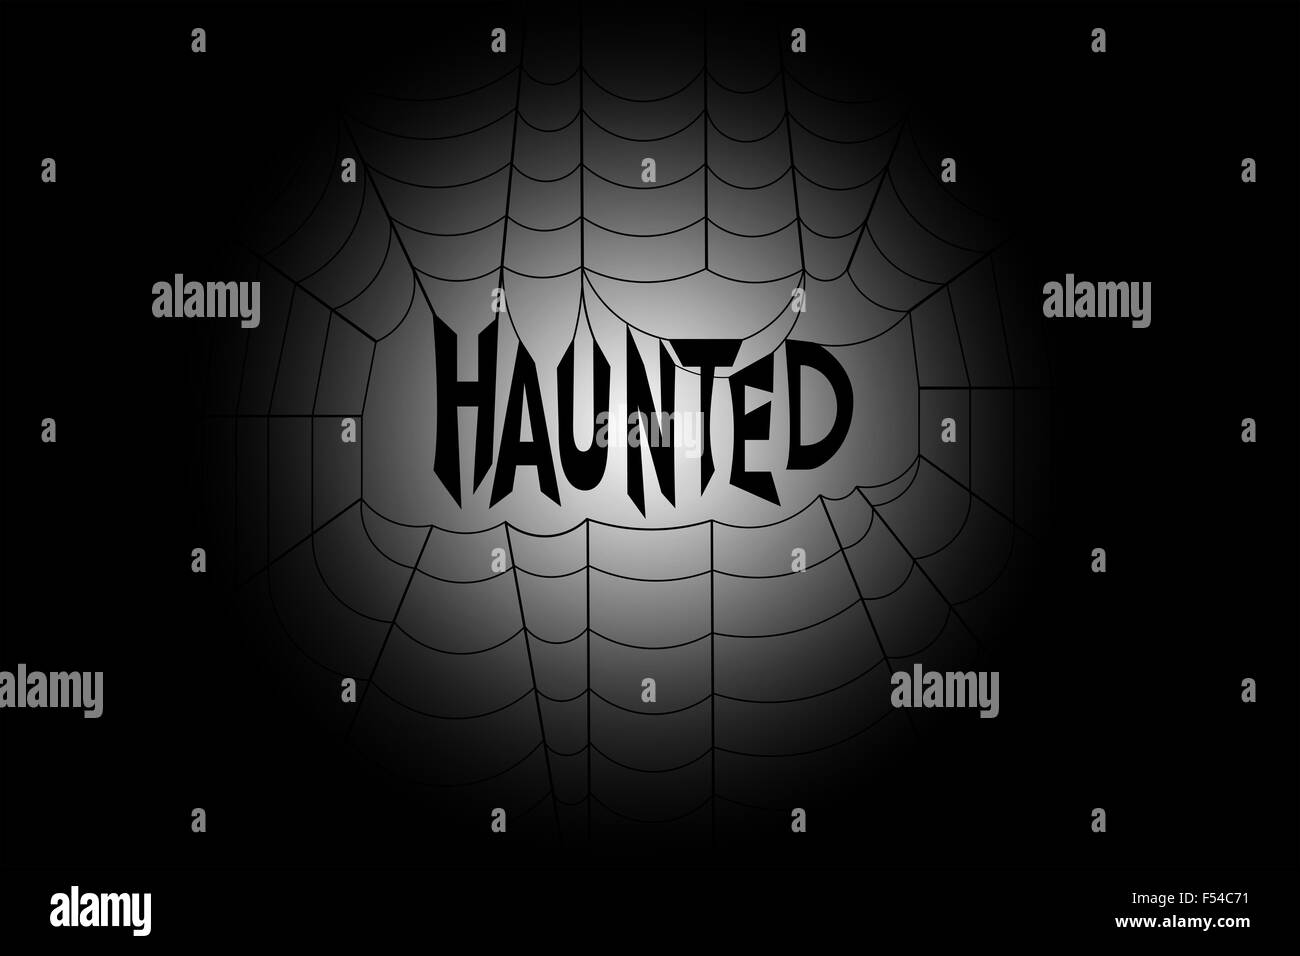 Mot haunted accroché au milieu d'une toile d'araignée, contre gradient spooky black and white background Banque D'Images